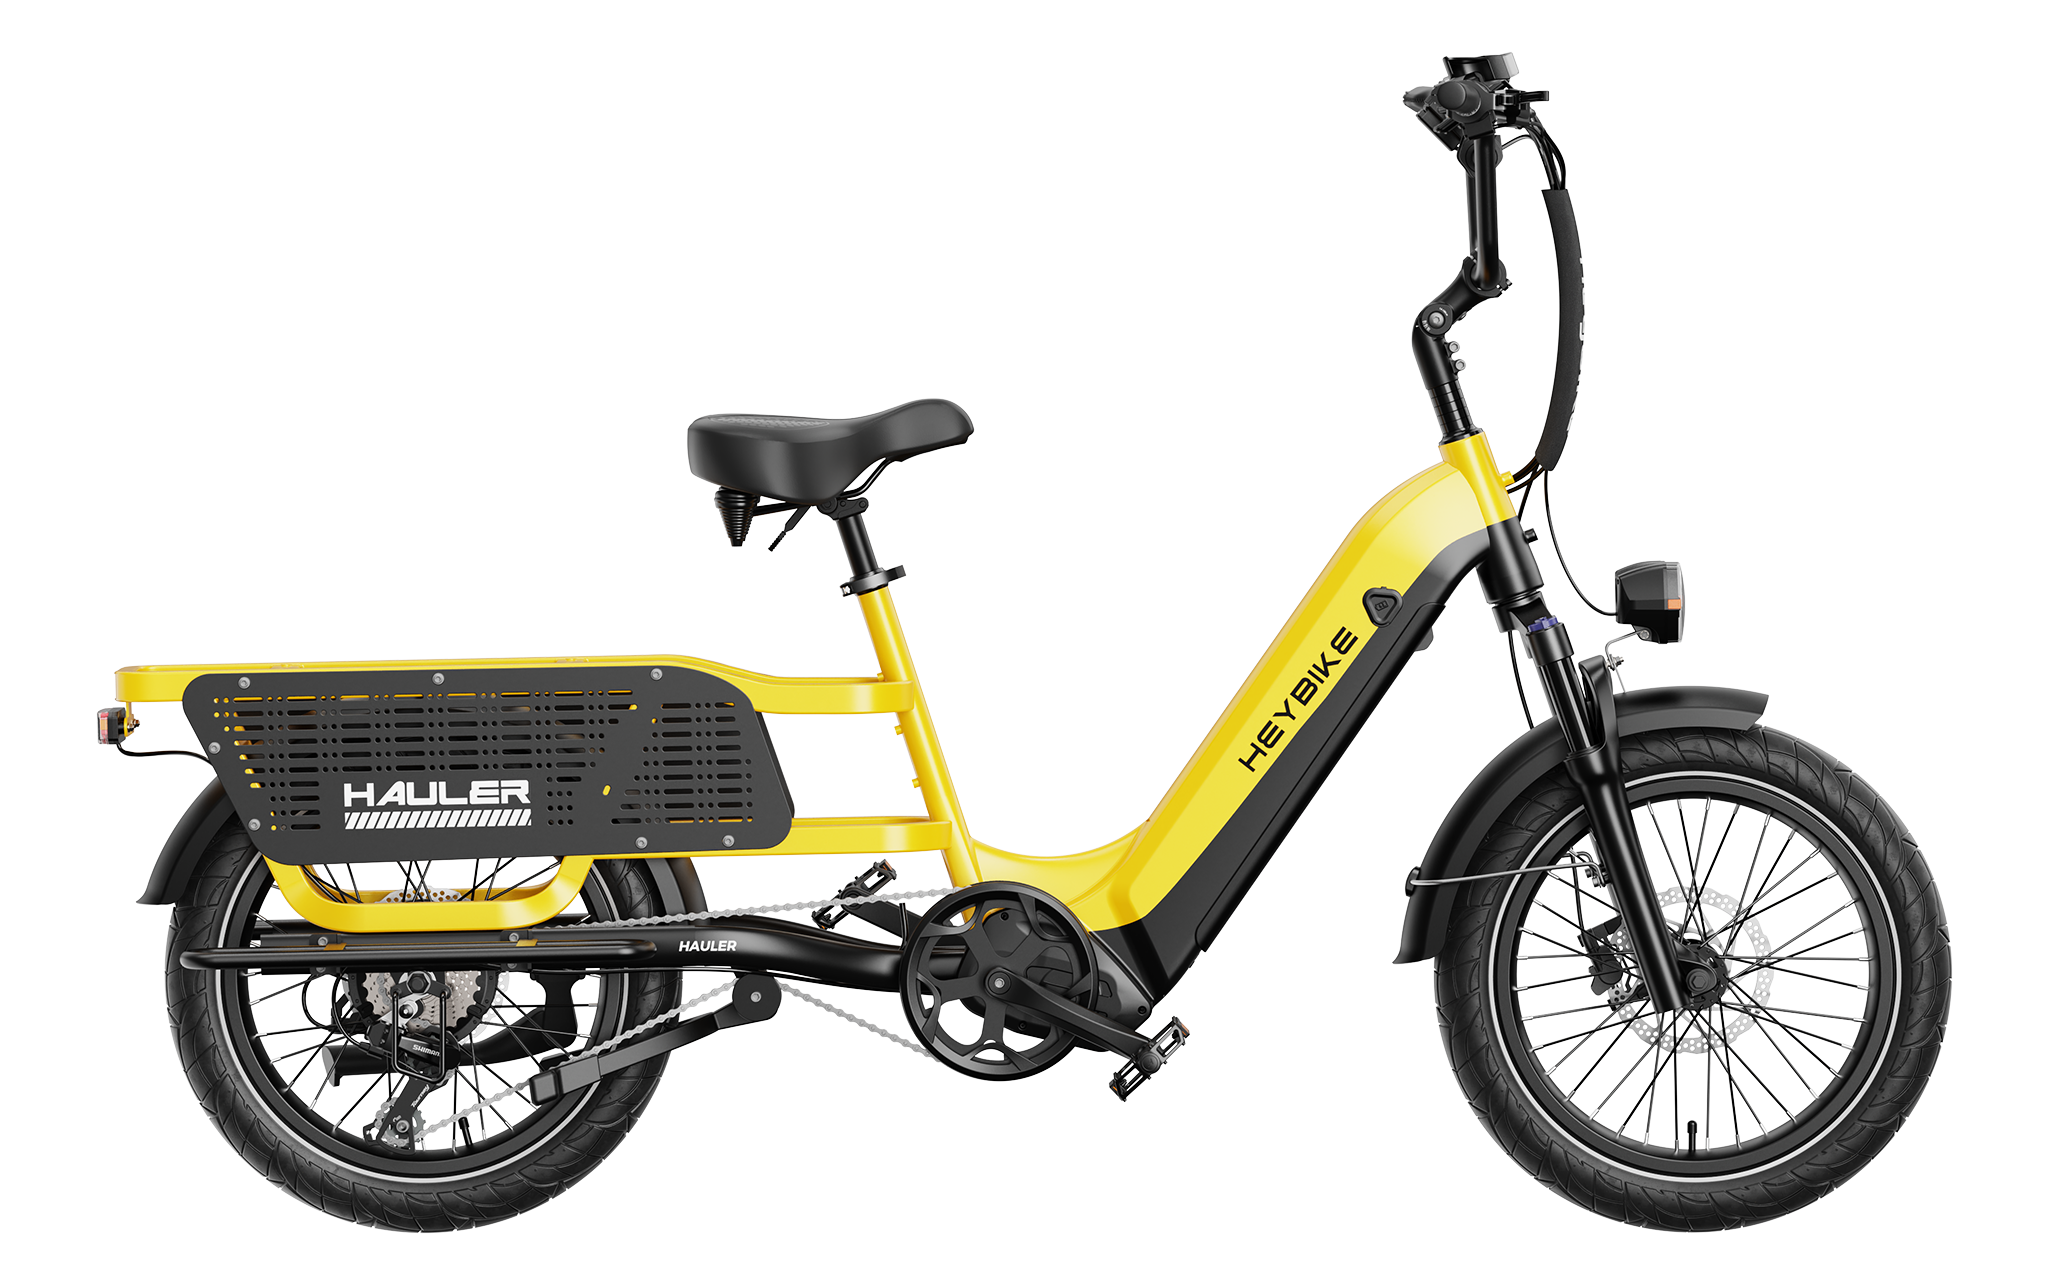 Hauler cargo e-bike - yellow